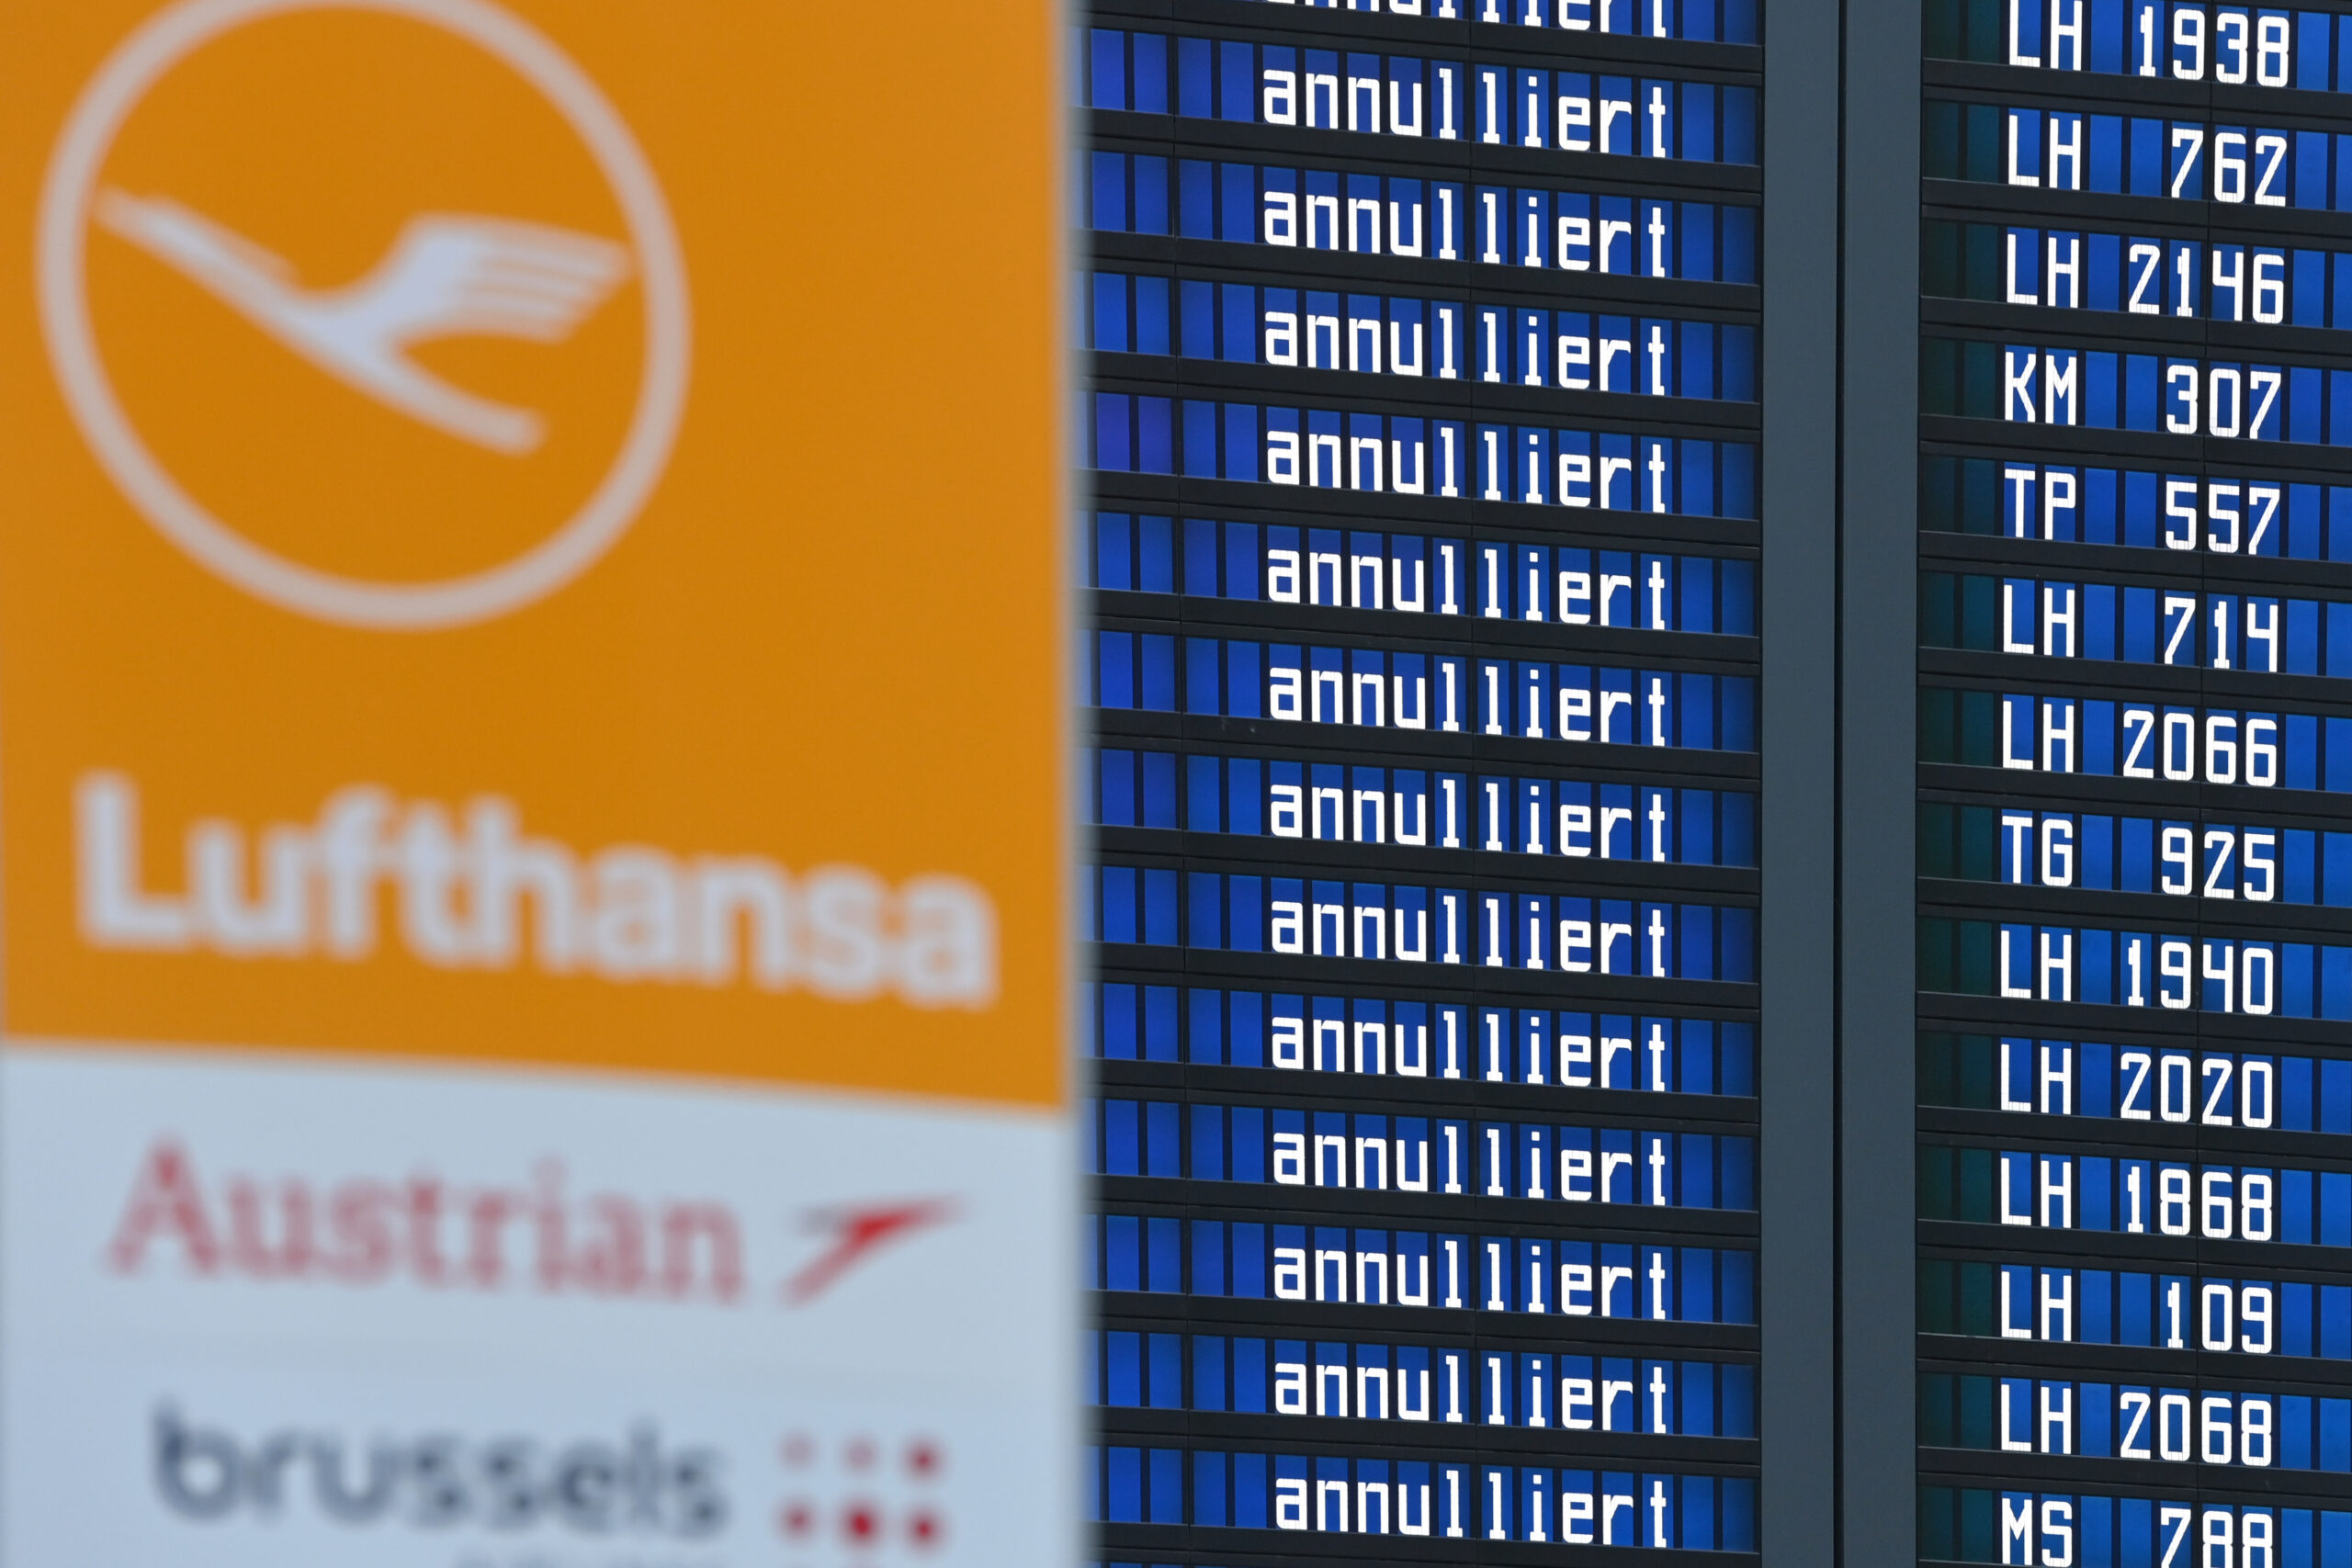 Eine Anzeigetafel mit Lufthansalogo. Sie zeigt nur annullierte Flüge an.